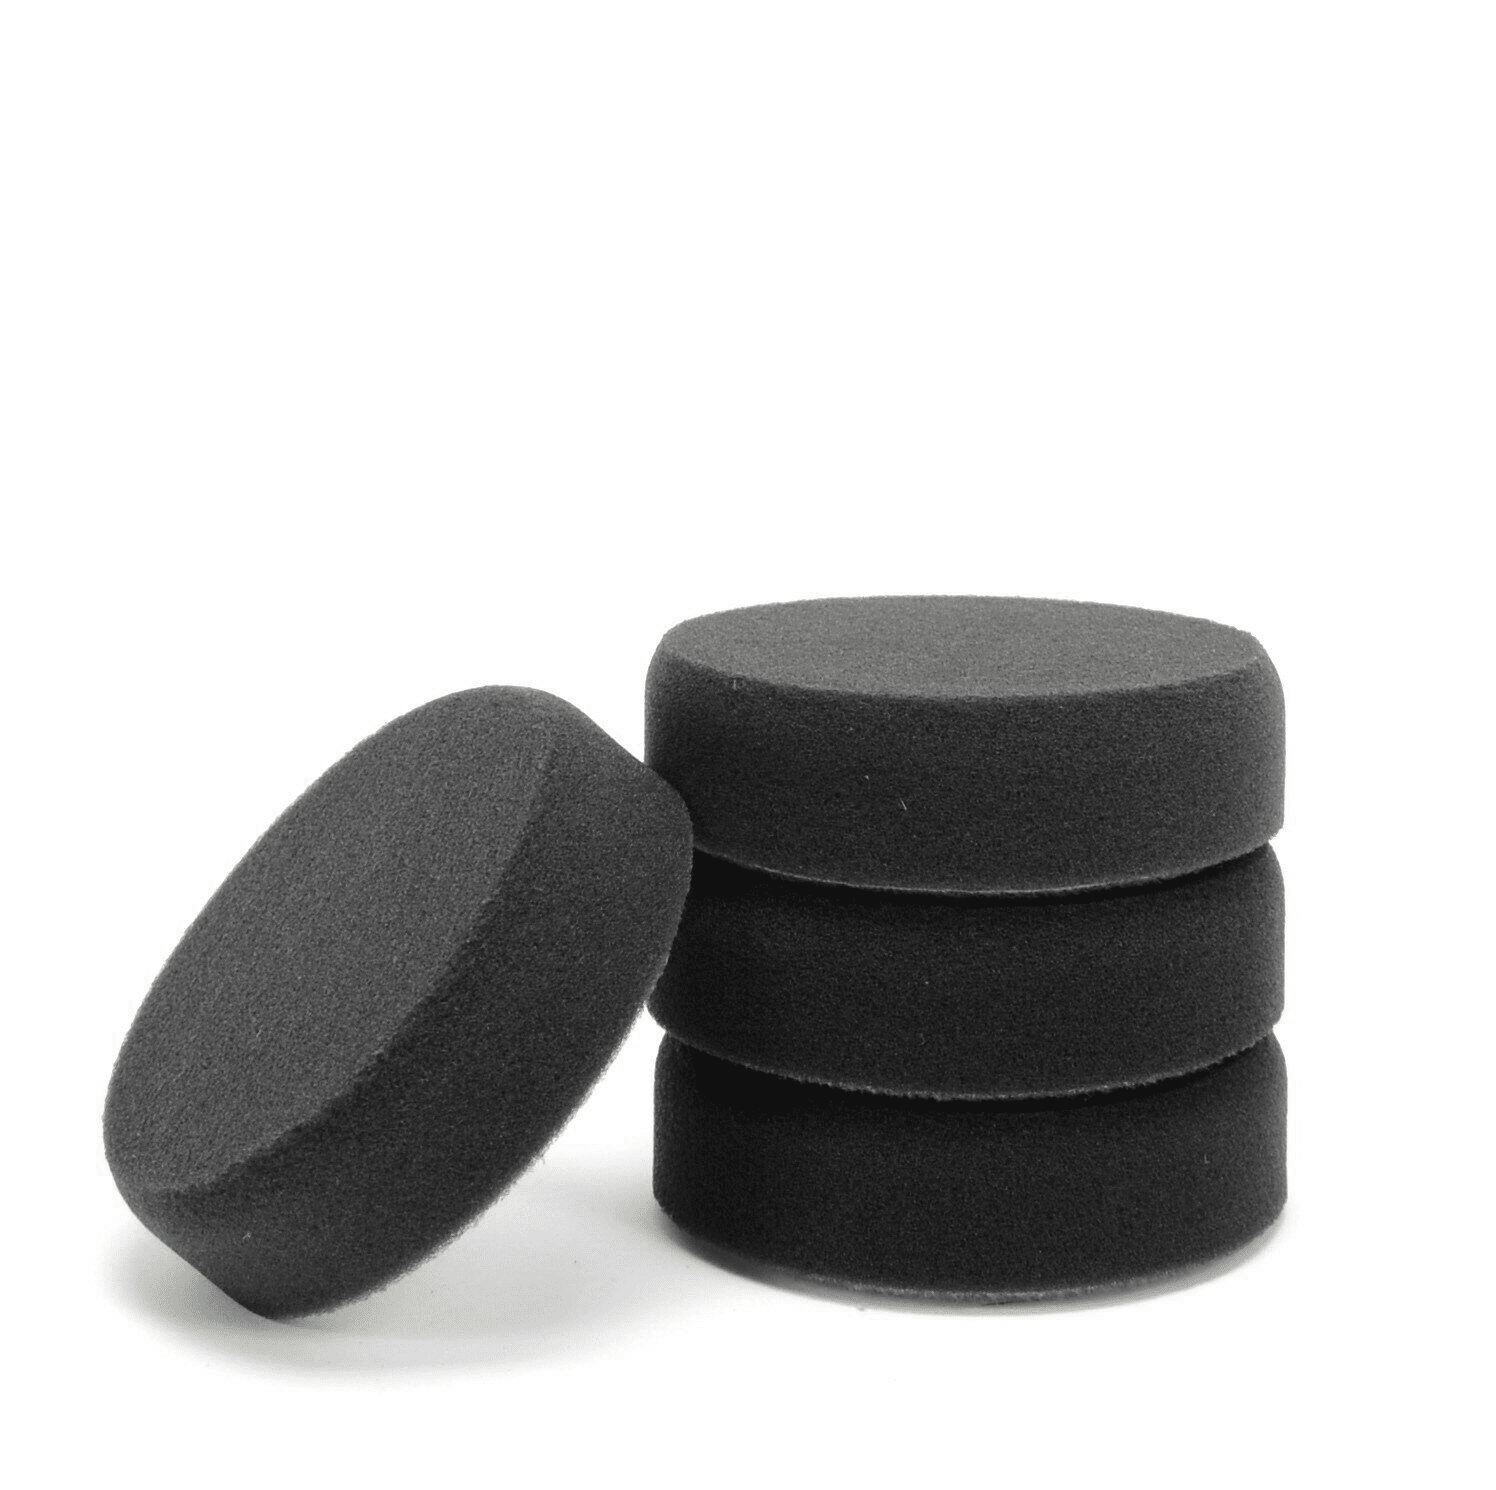 Изображение Polierschwamm 77mm schwarz glatt weich für Autolack und Politur Wachs 4er Set 